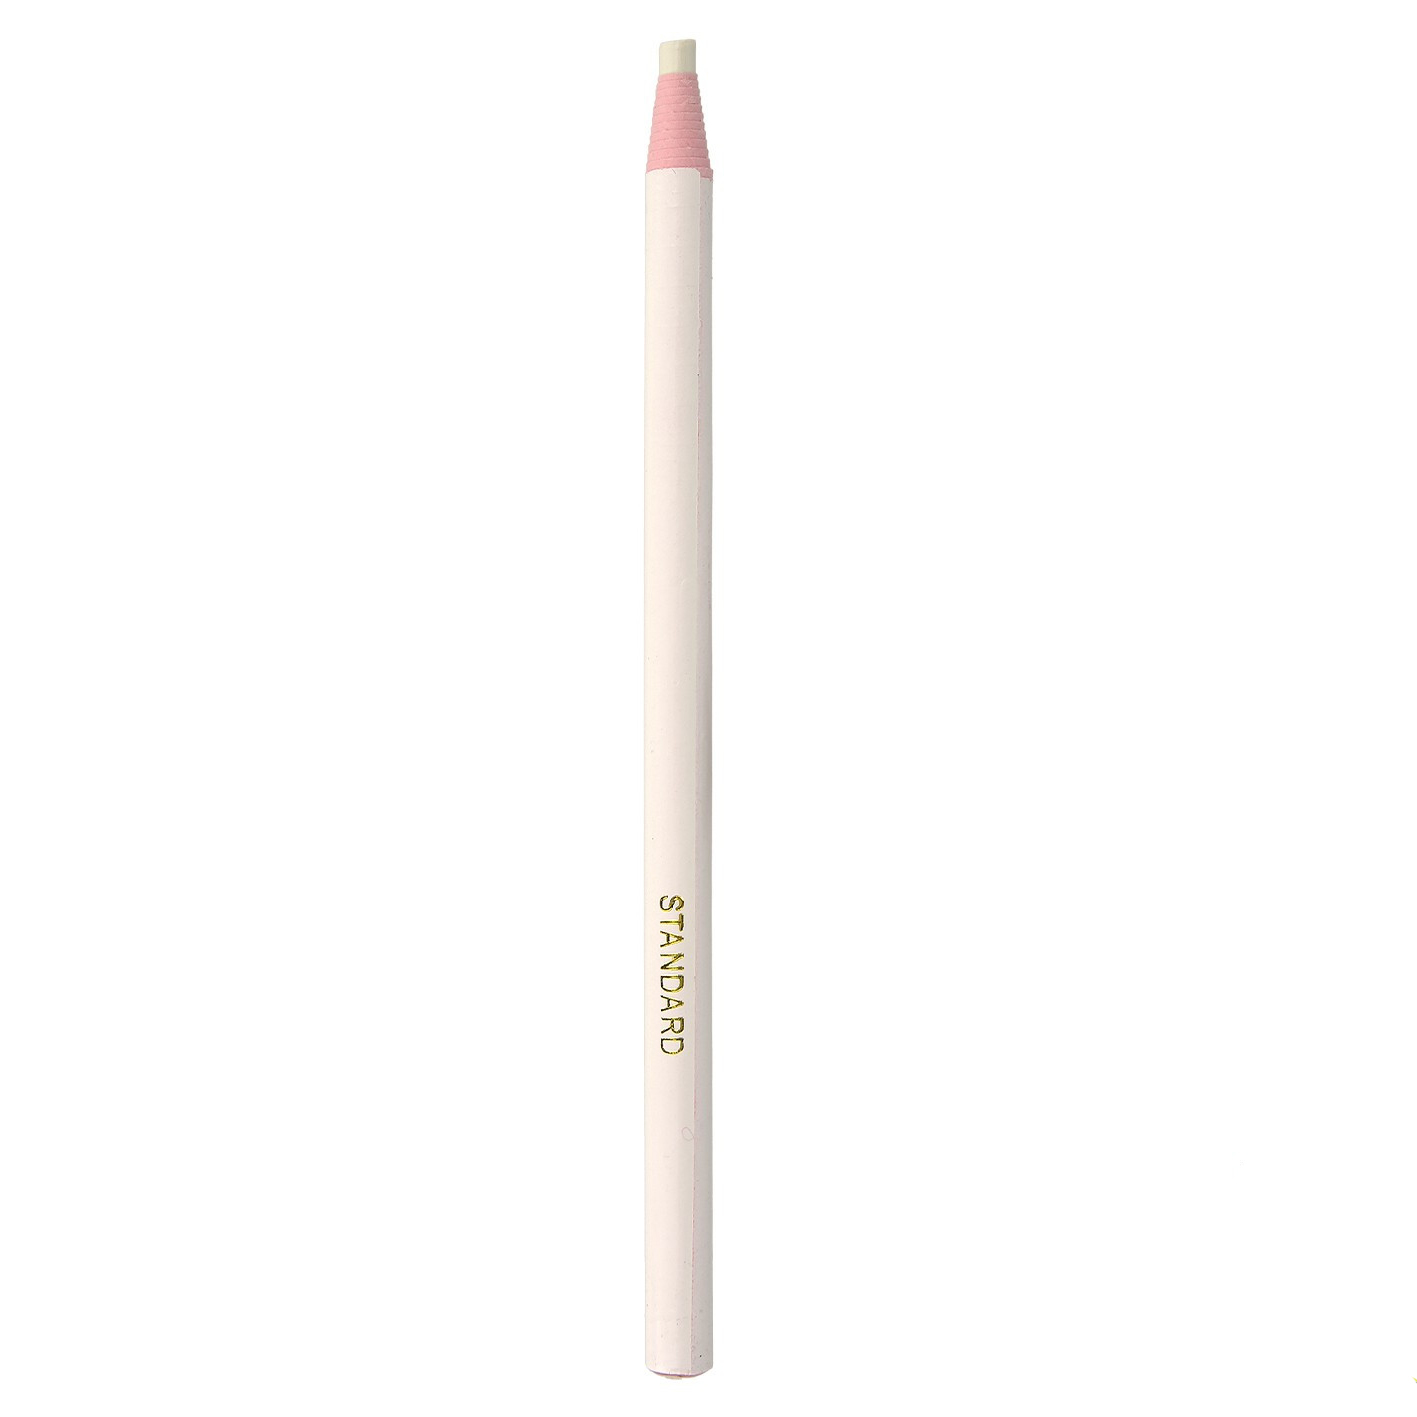 Crayon de marquage - Feutre marqueur turquoise - pointe standard